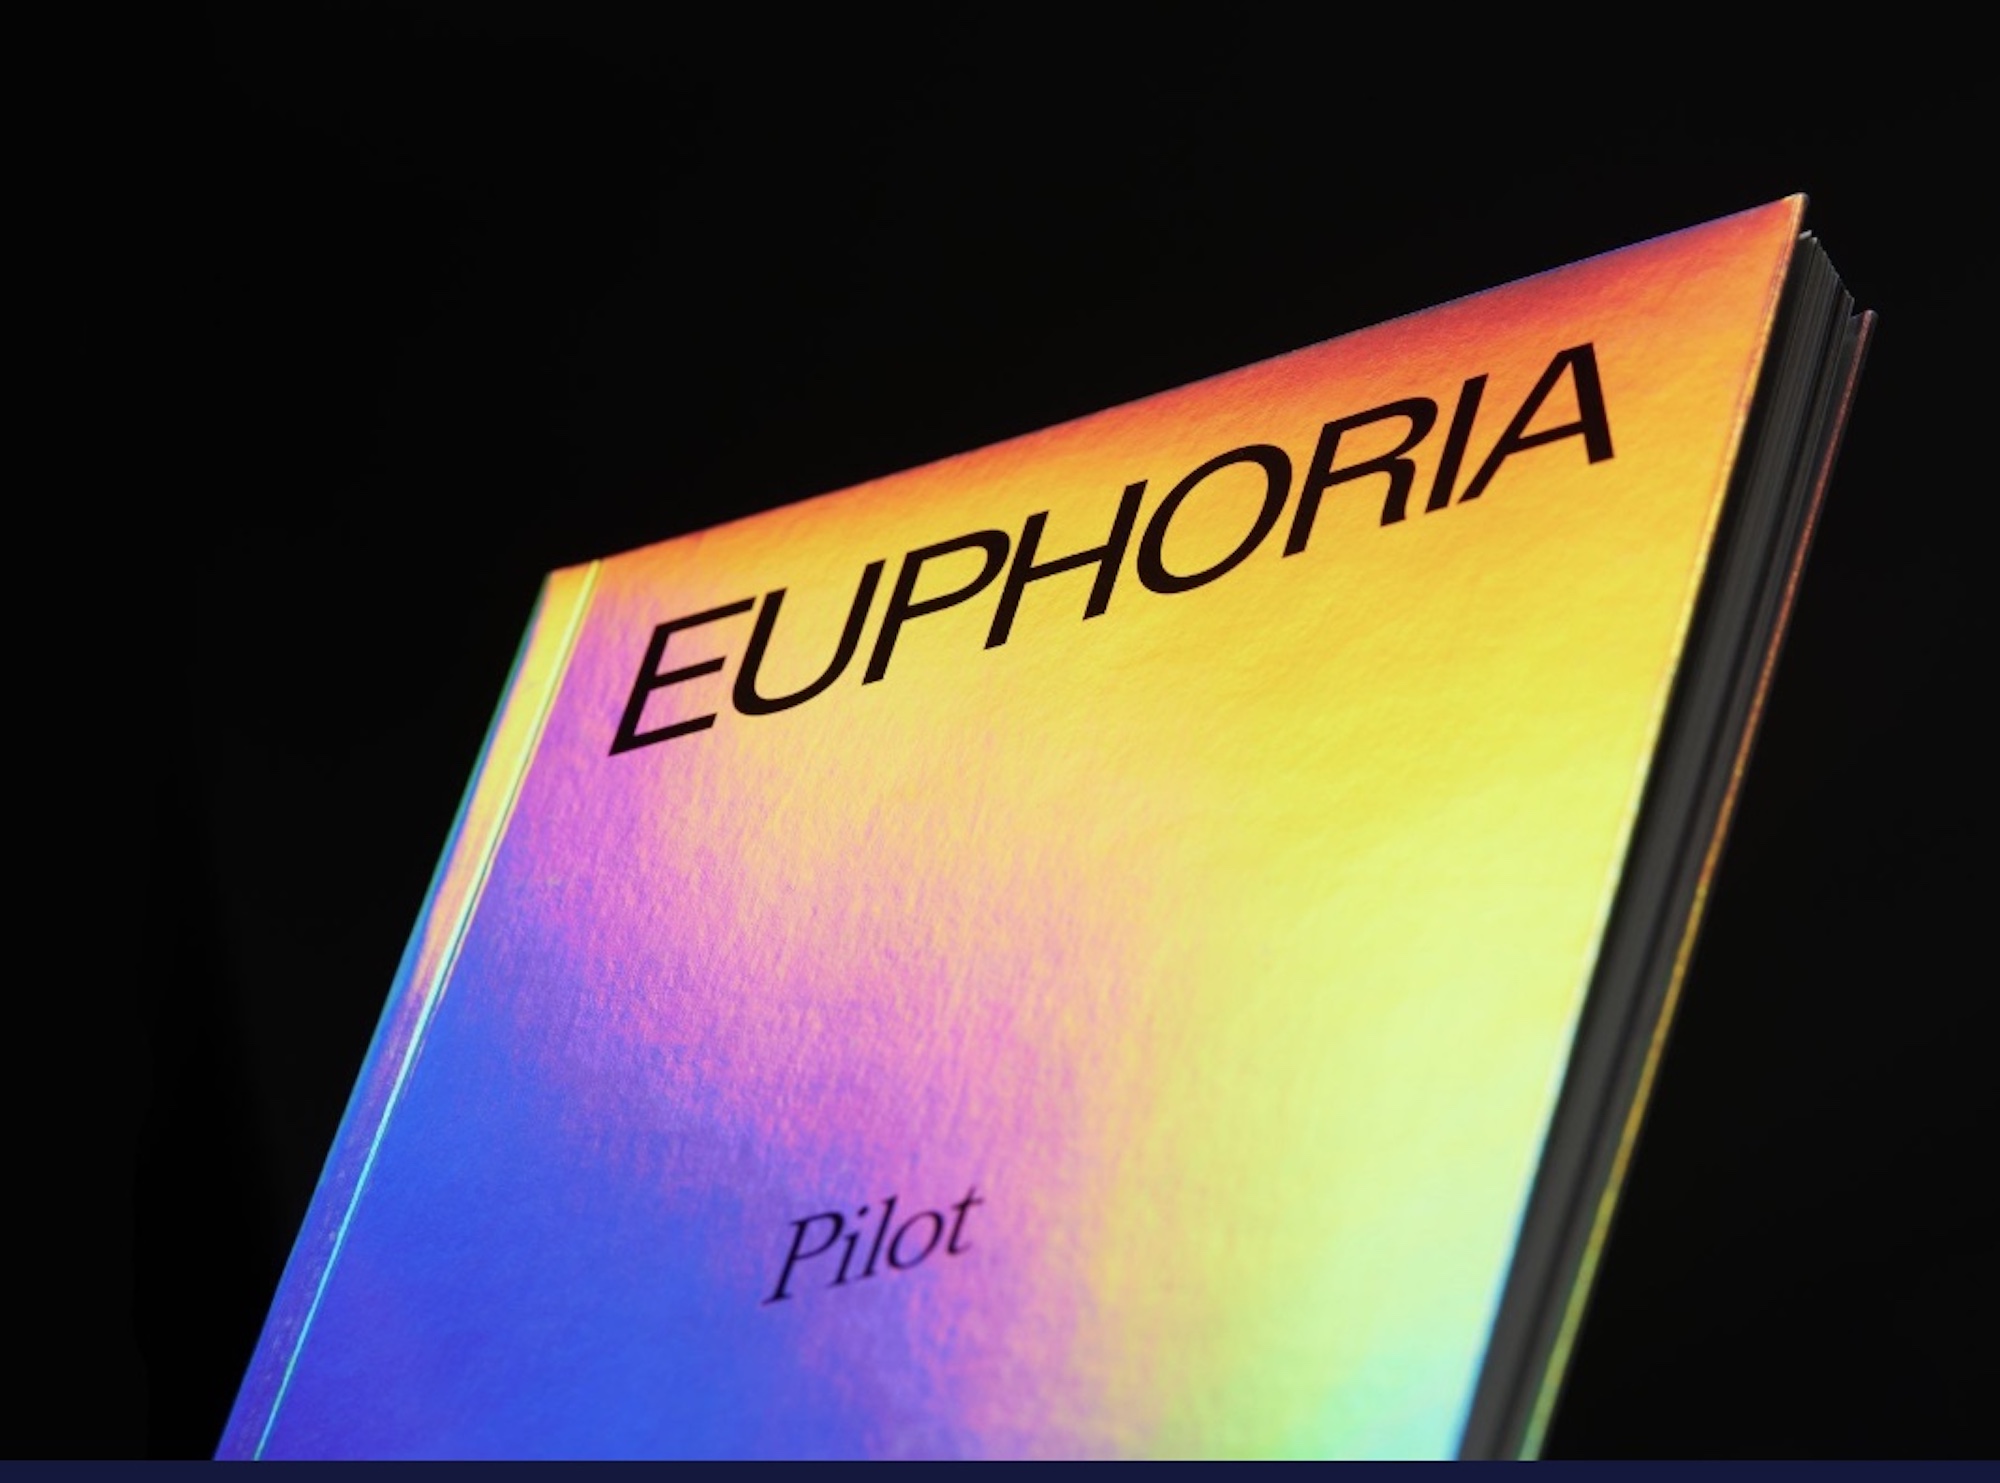 Euphoria screenplay